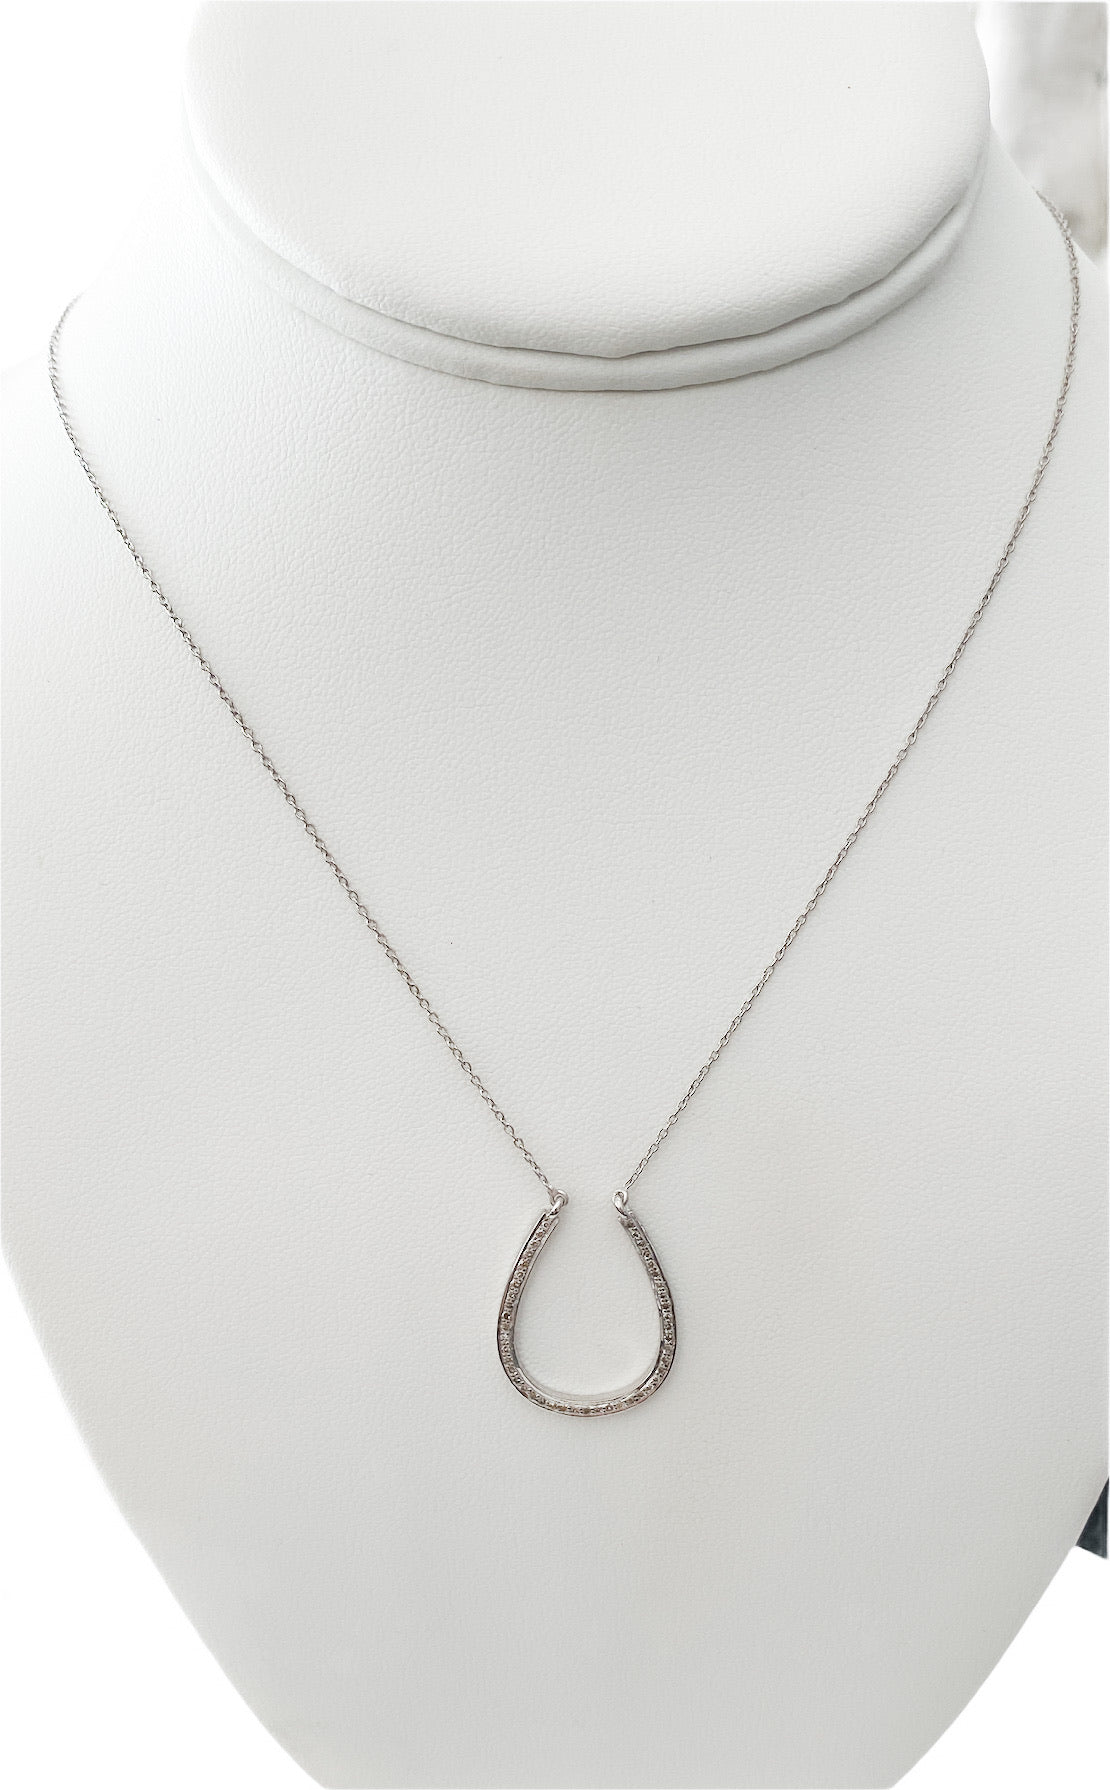 S.Row Designs Silver Pave Diamond Necklace